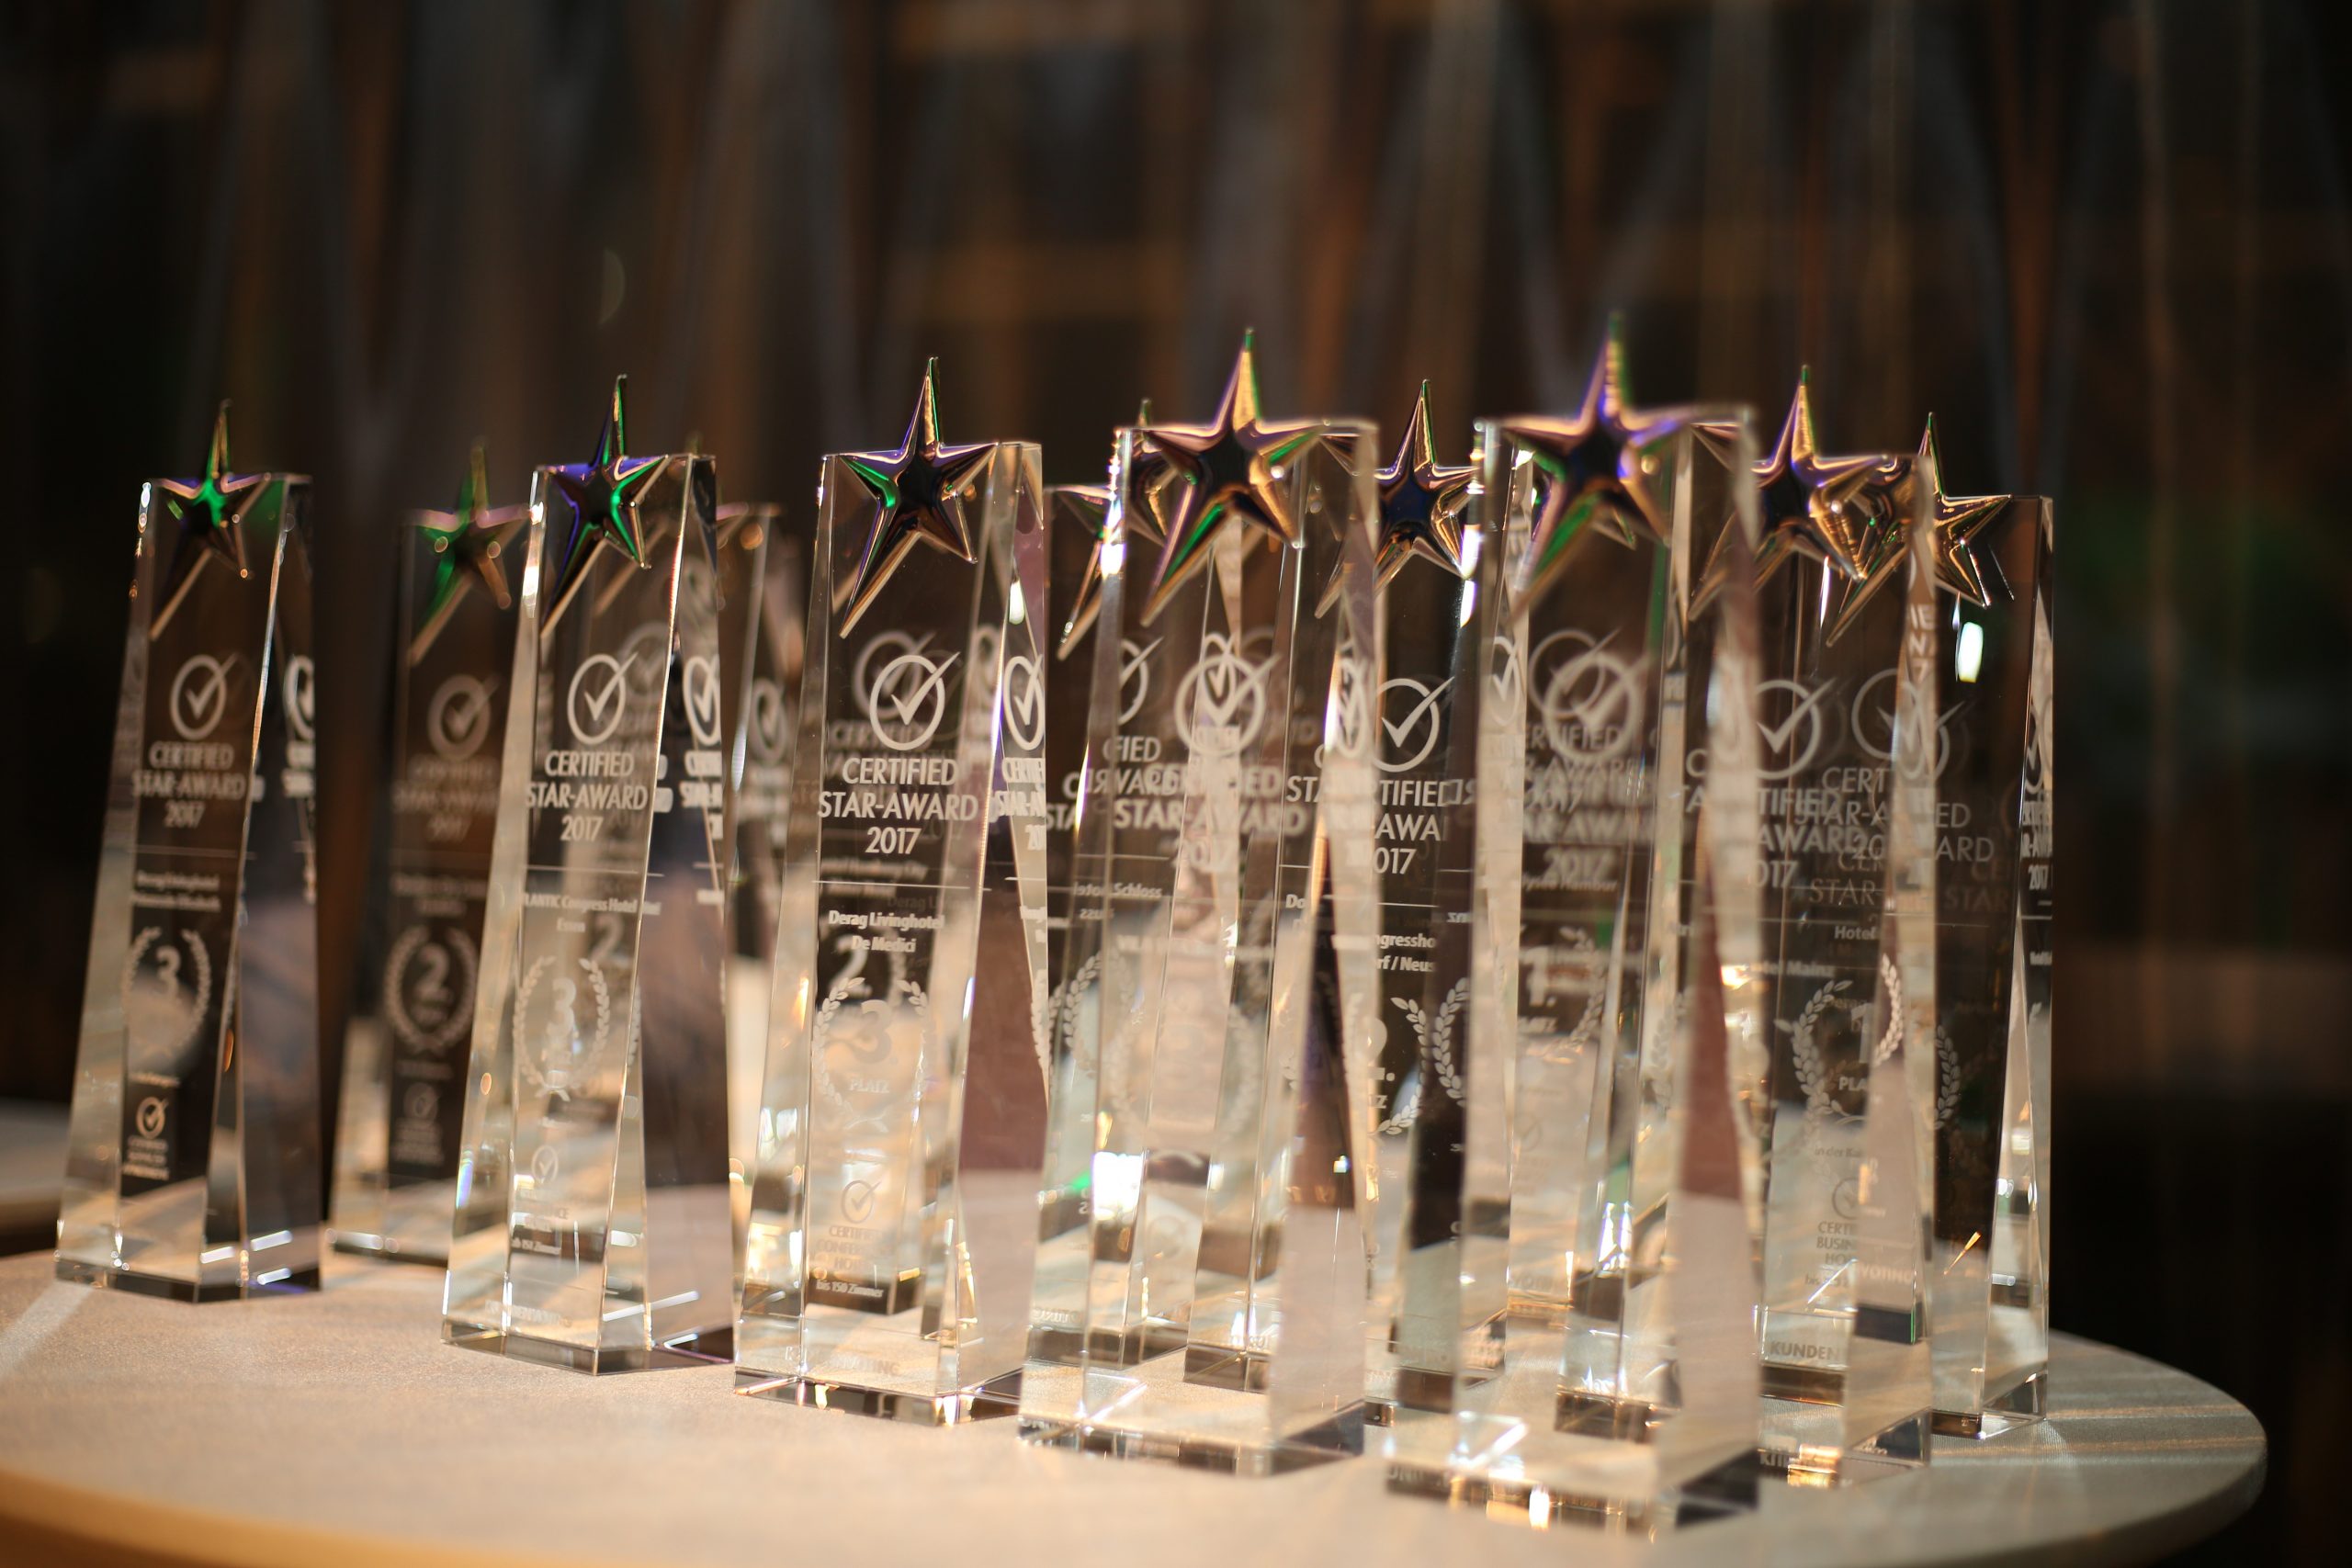 Certified Star Award 2021- Das sind die ersten nominierten Certified Conference Hotels